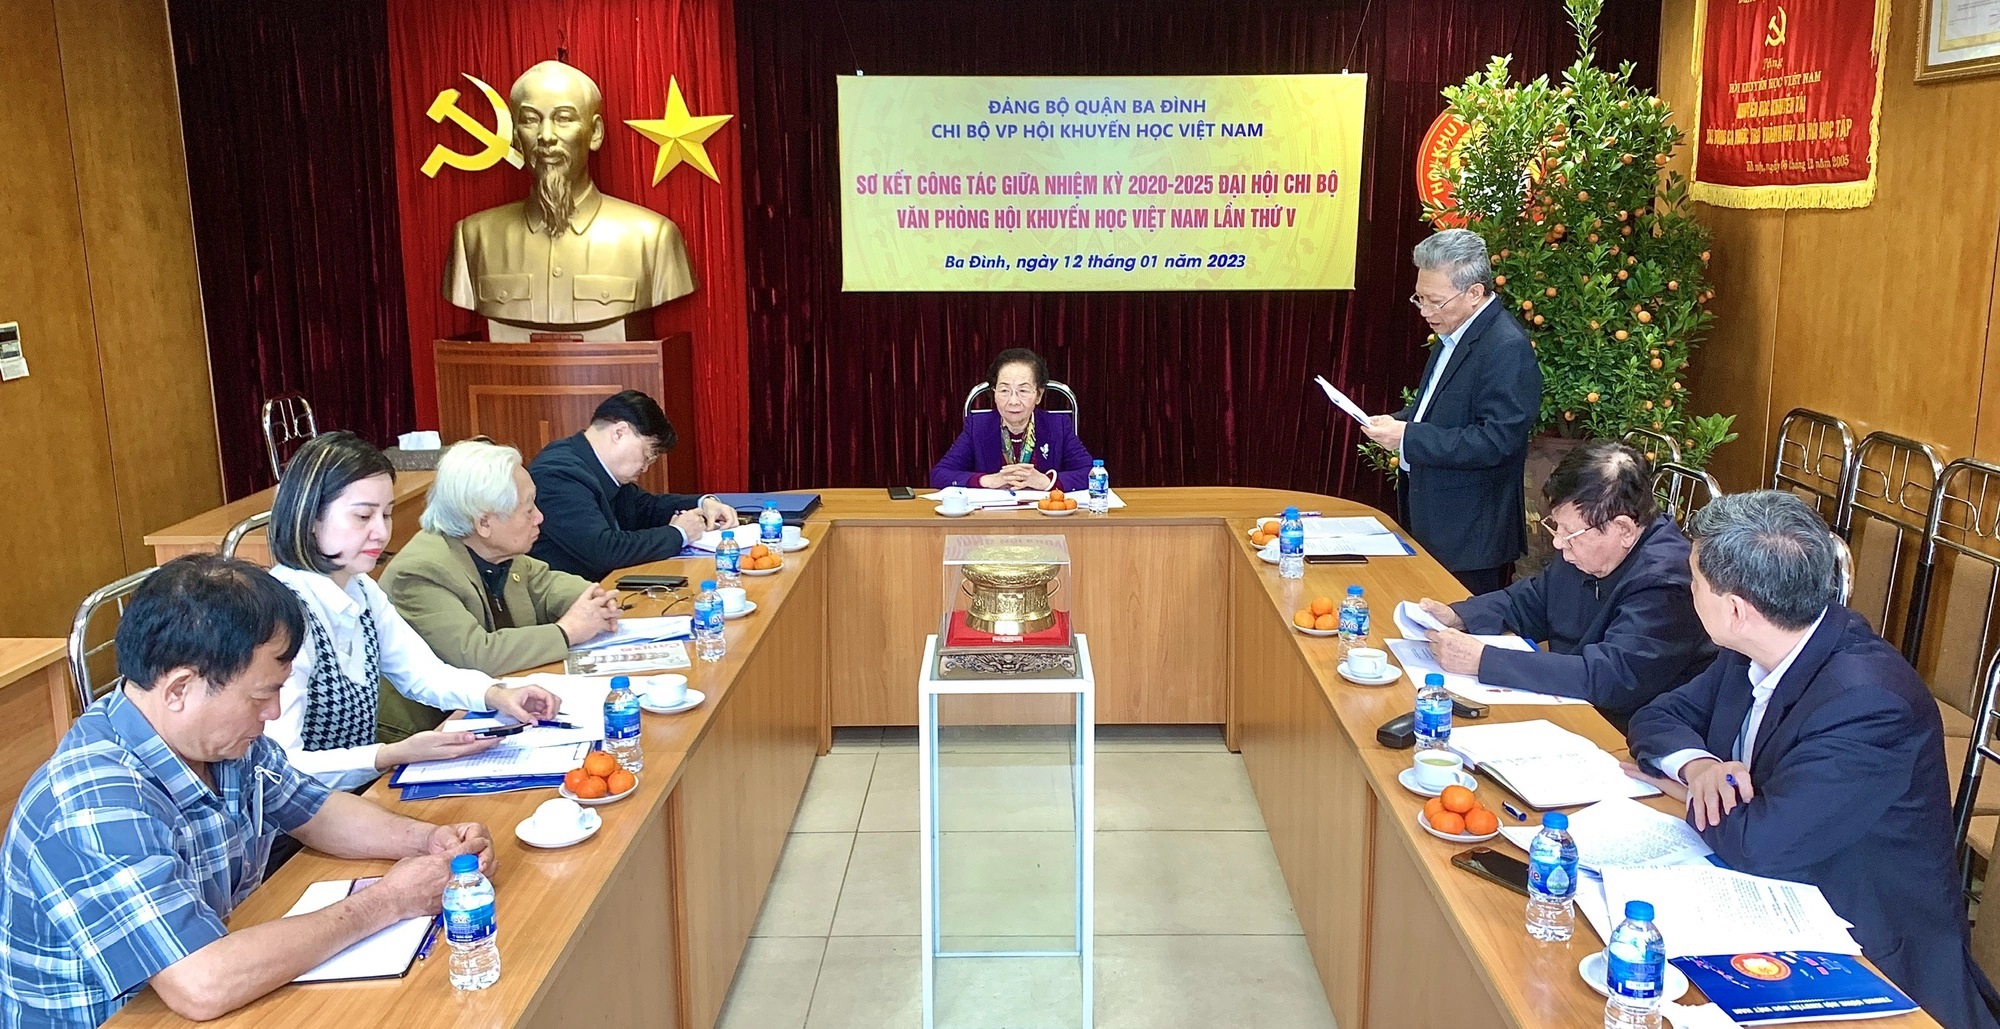 Chi bộ Văn phòng Trung ương Hội Khuyến học Việt Nam sơ kết công tác giữa nhiệm kỳ 2020-2025